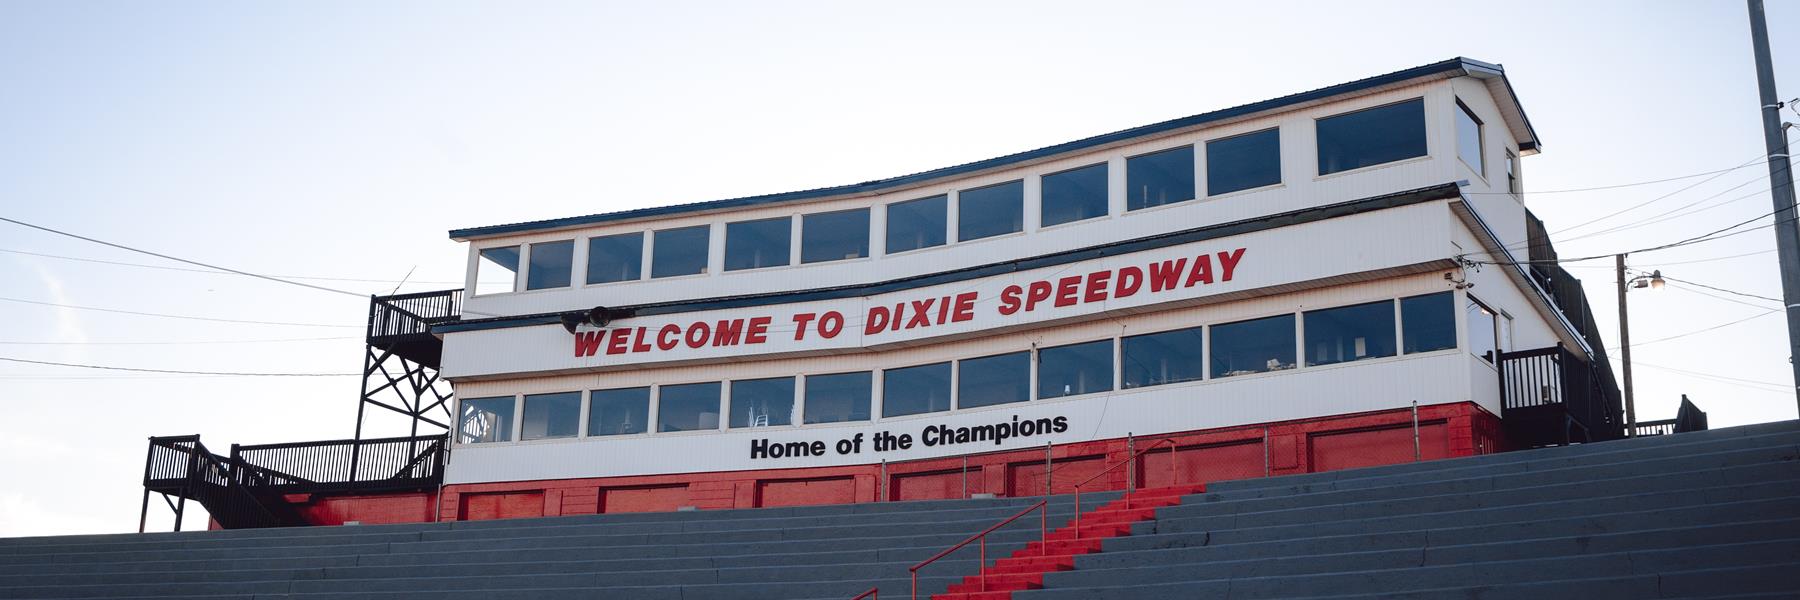 3/29/1997 - Dixie Speedway